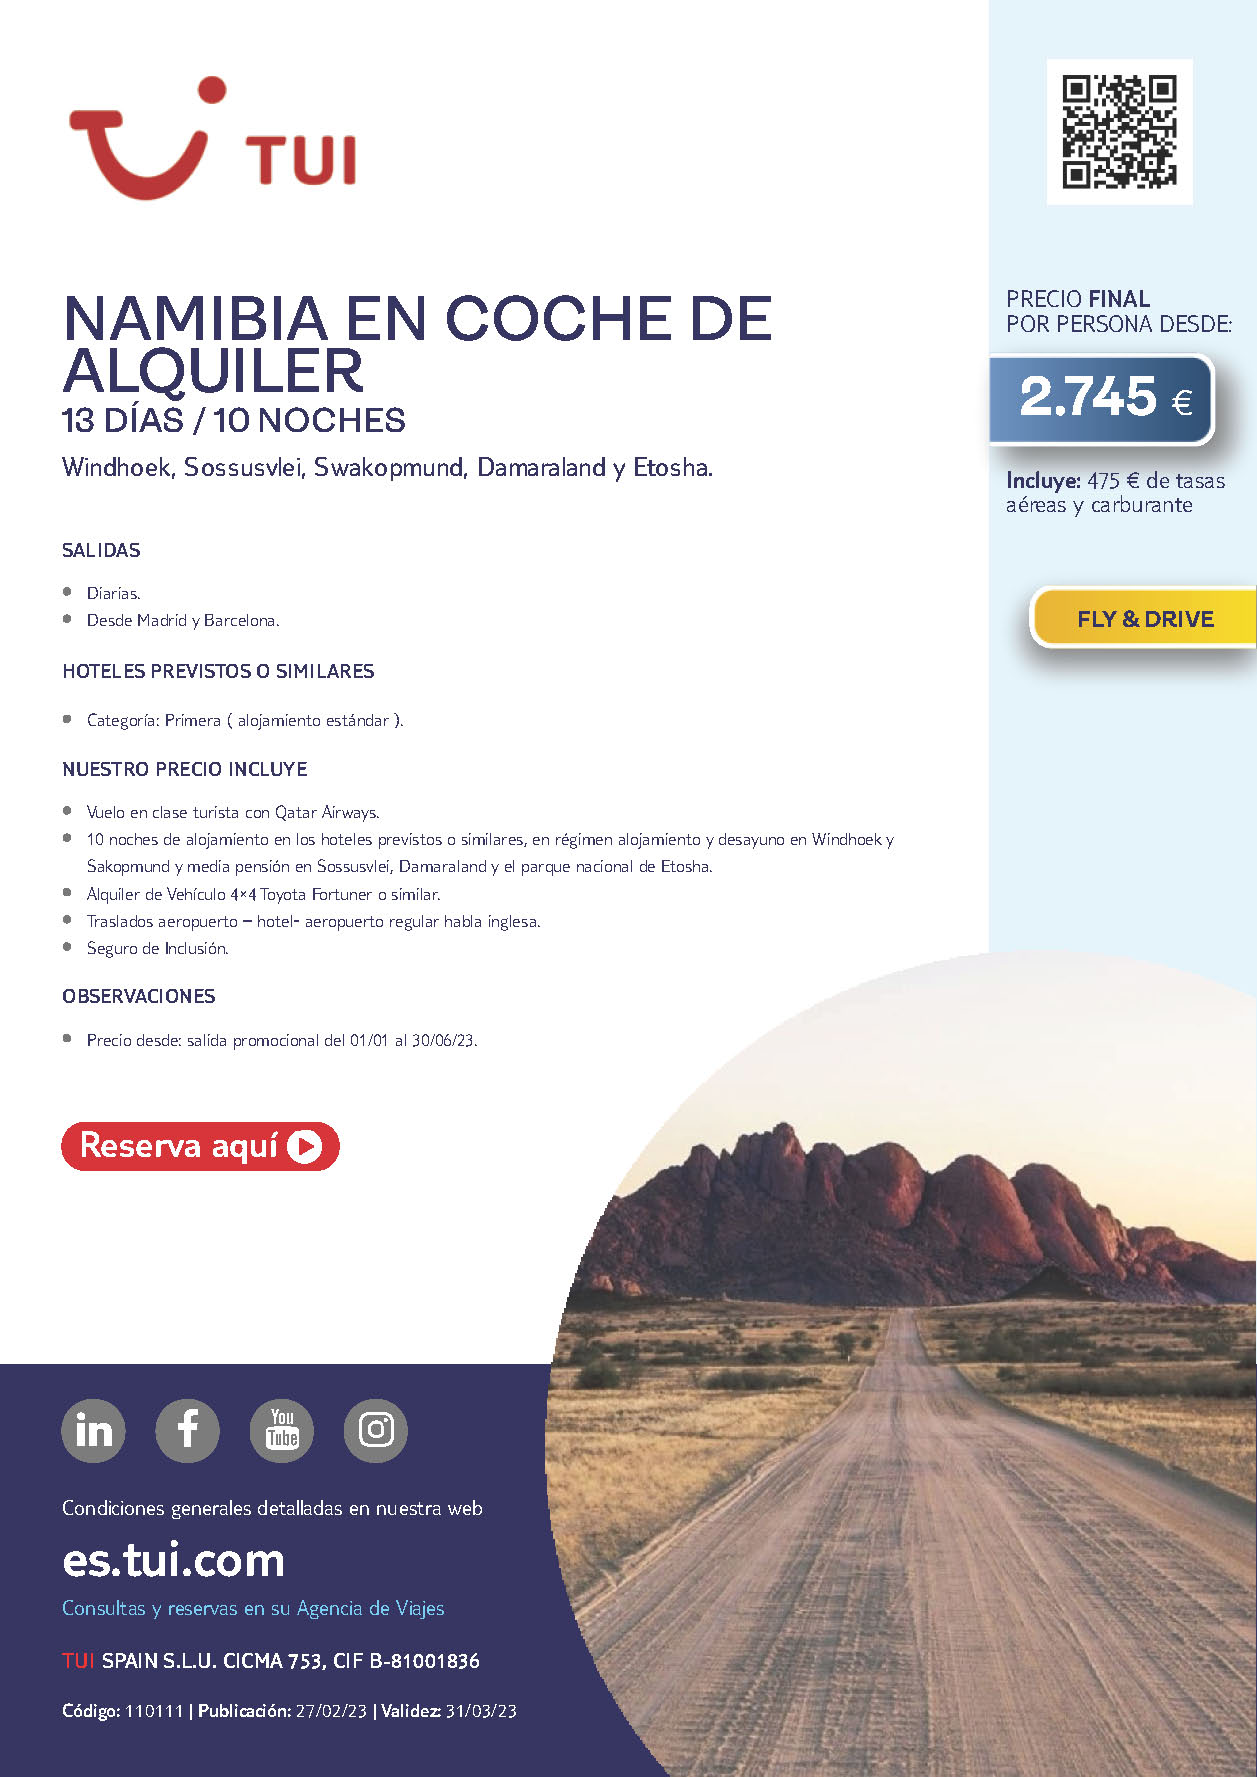 Oferta TUI Namibia en coche de alquiler 13 dias 10 noches Verano 2023 salidas desde Barcelona y Madrid vuelos Qatar Airways